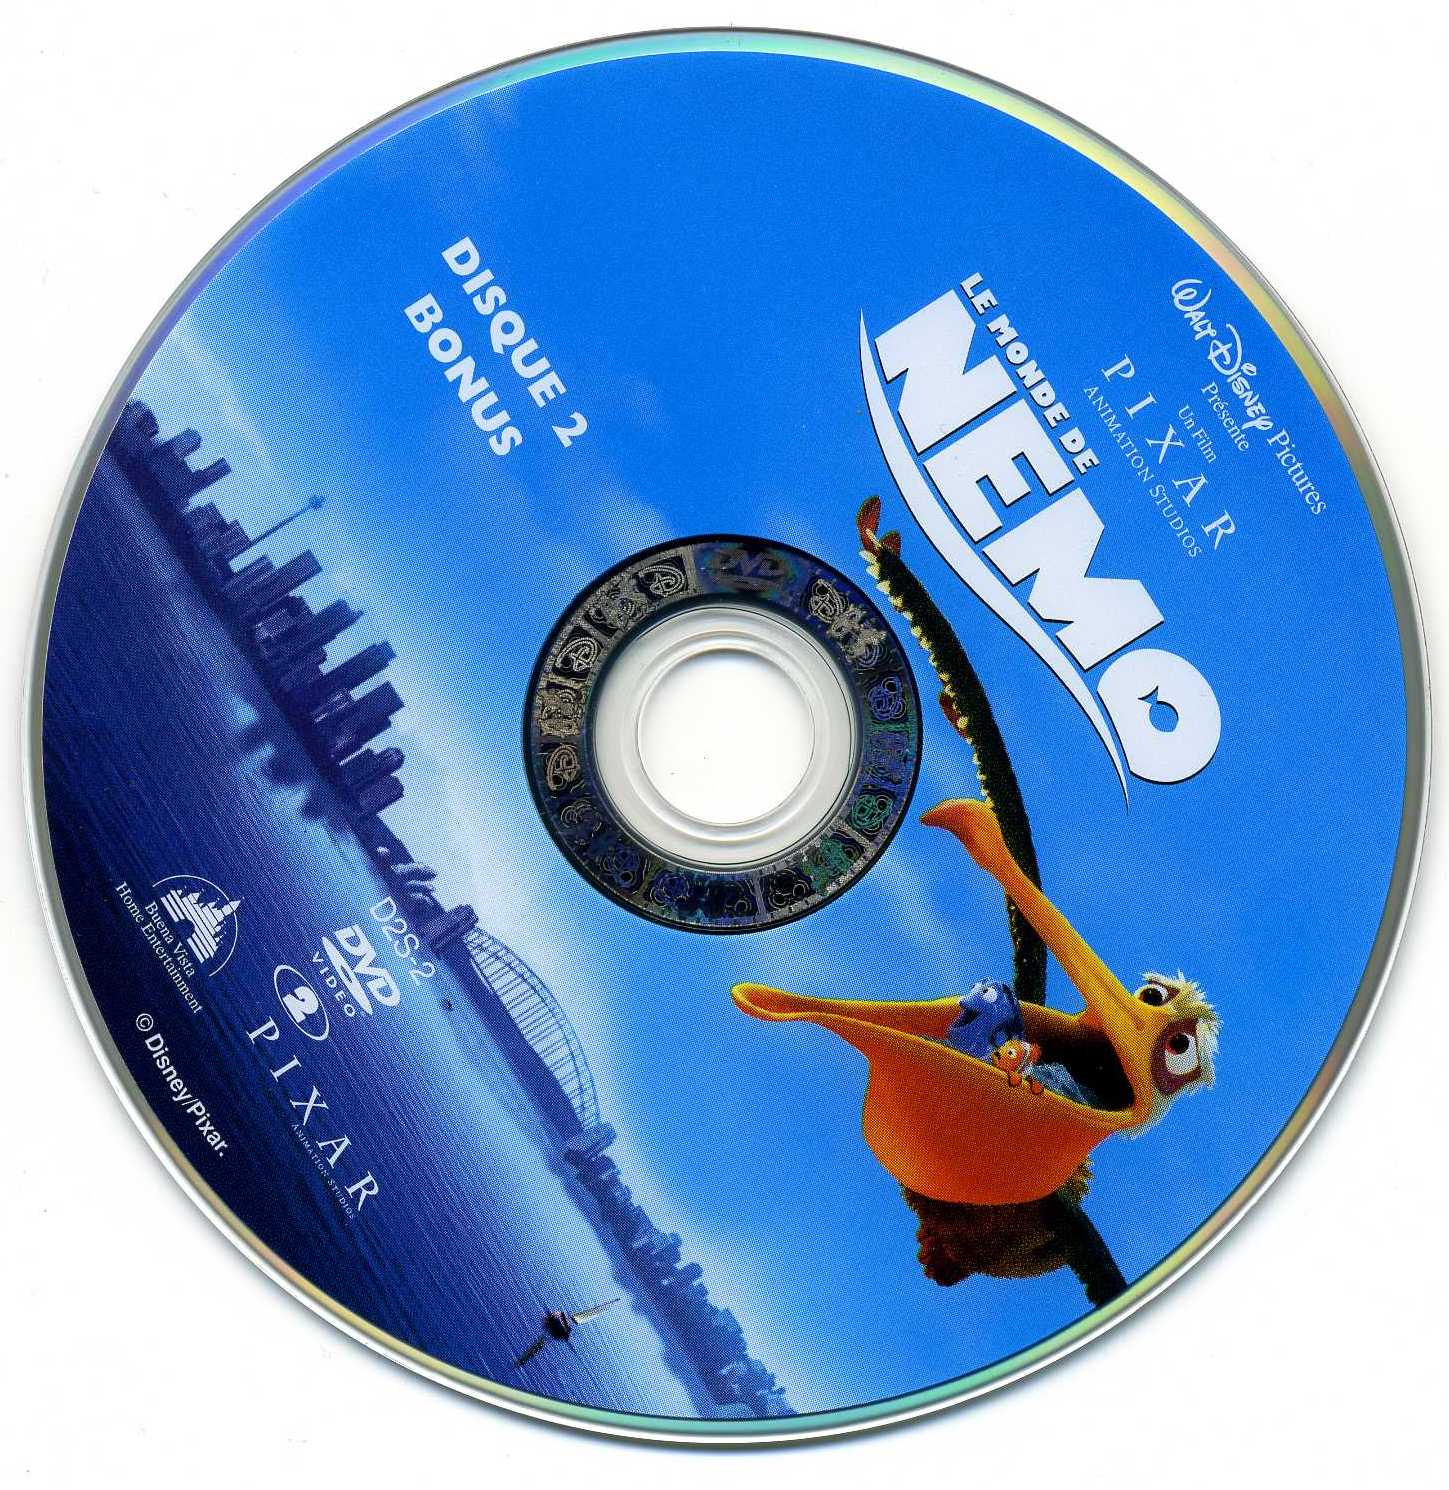 Le monde de Nemo DISC 2